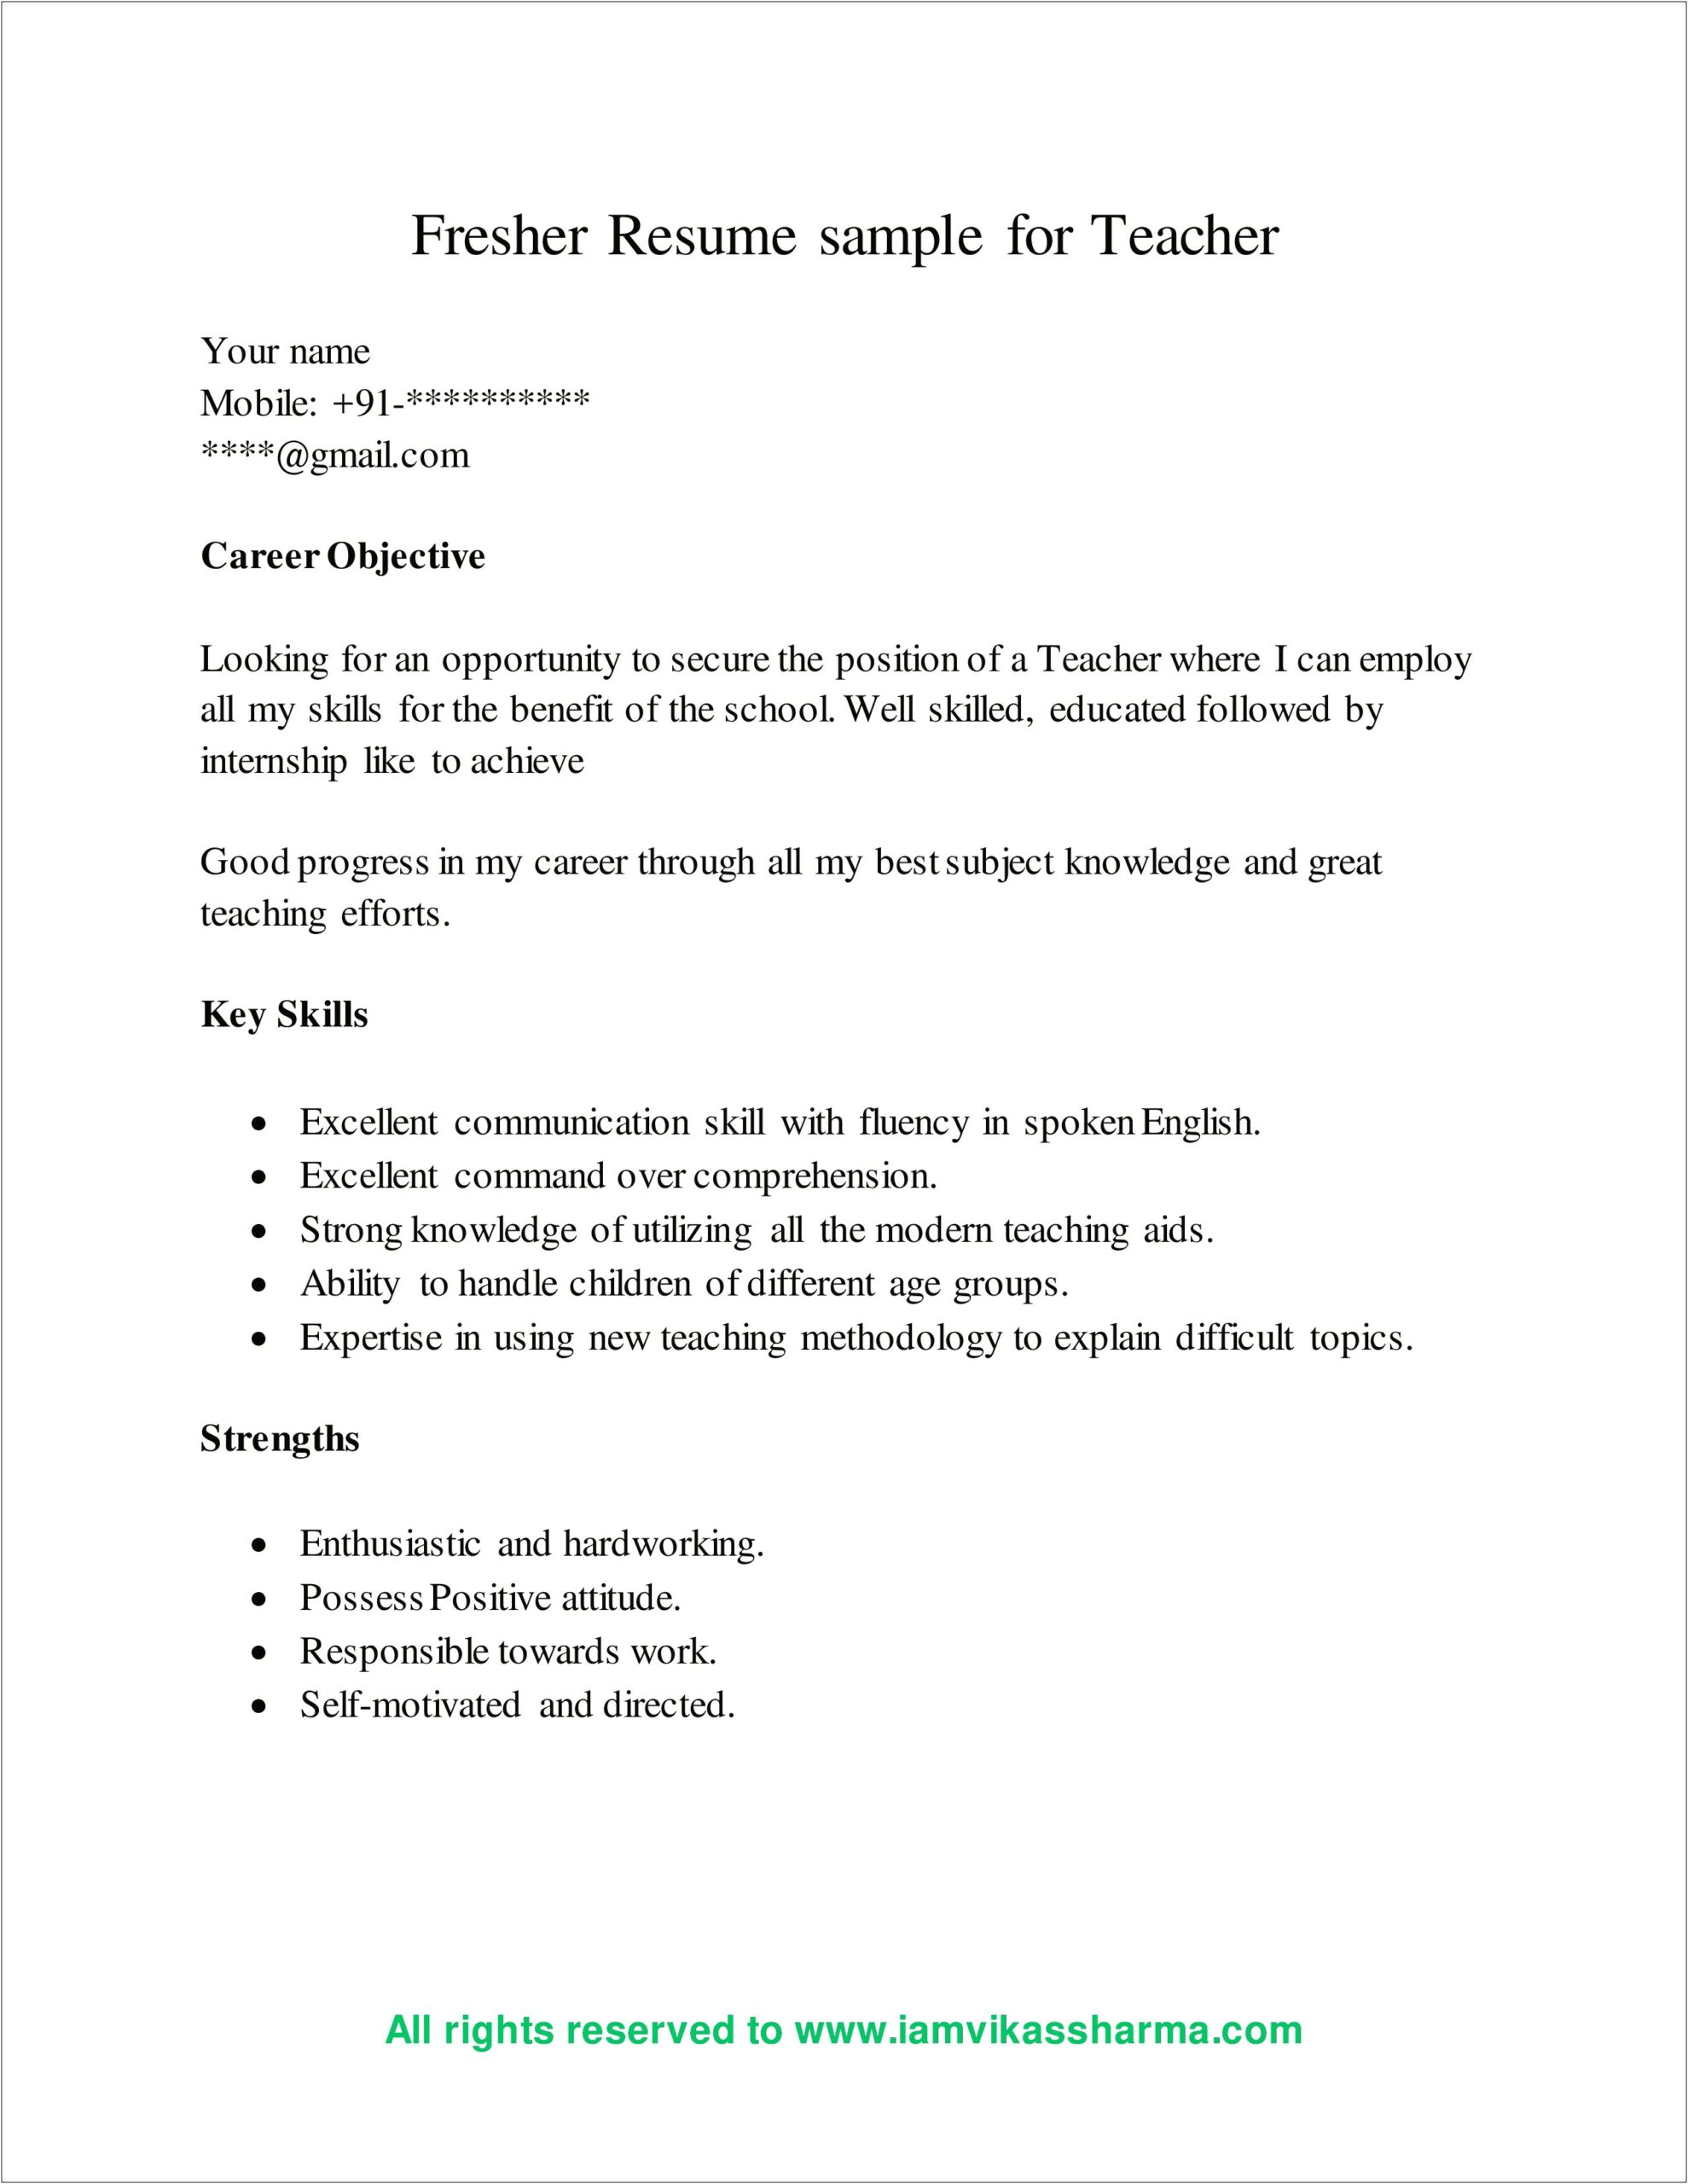 Resume For Teaching Job In School For Fresher